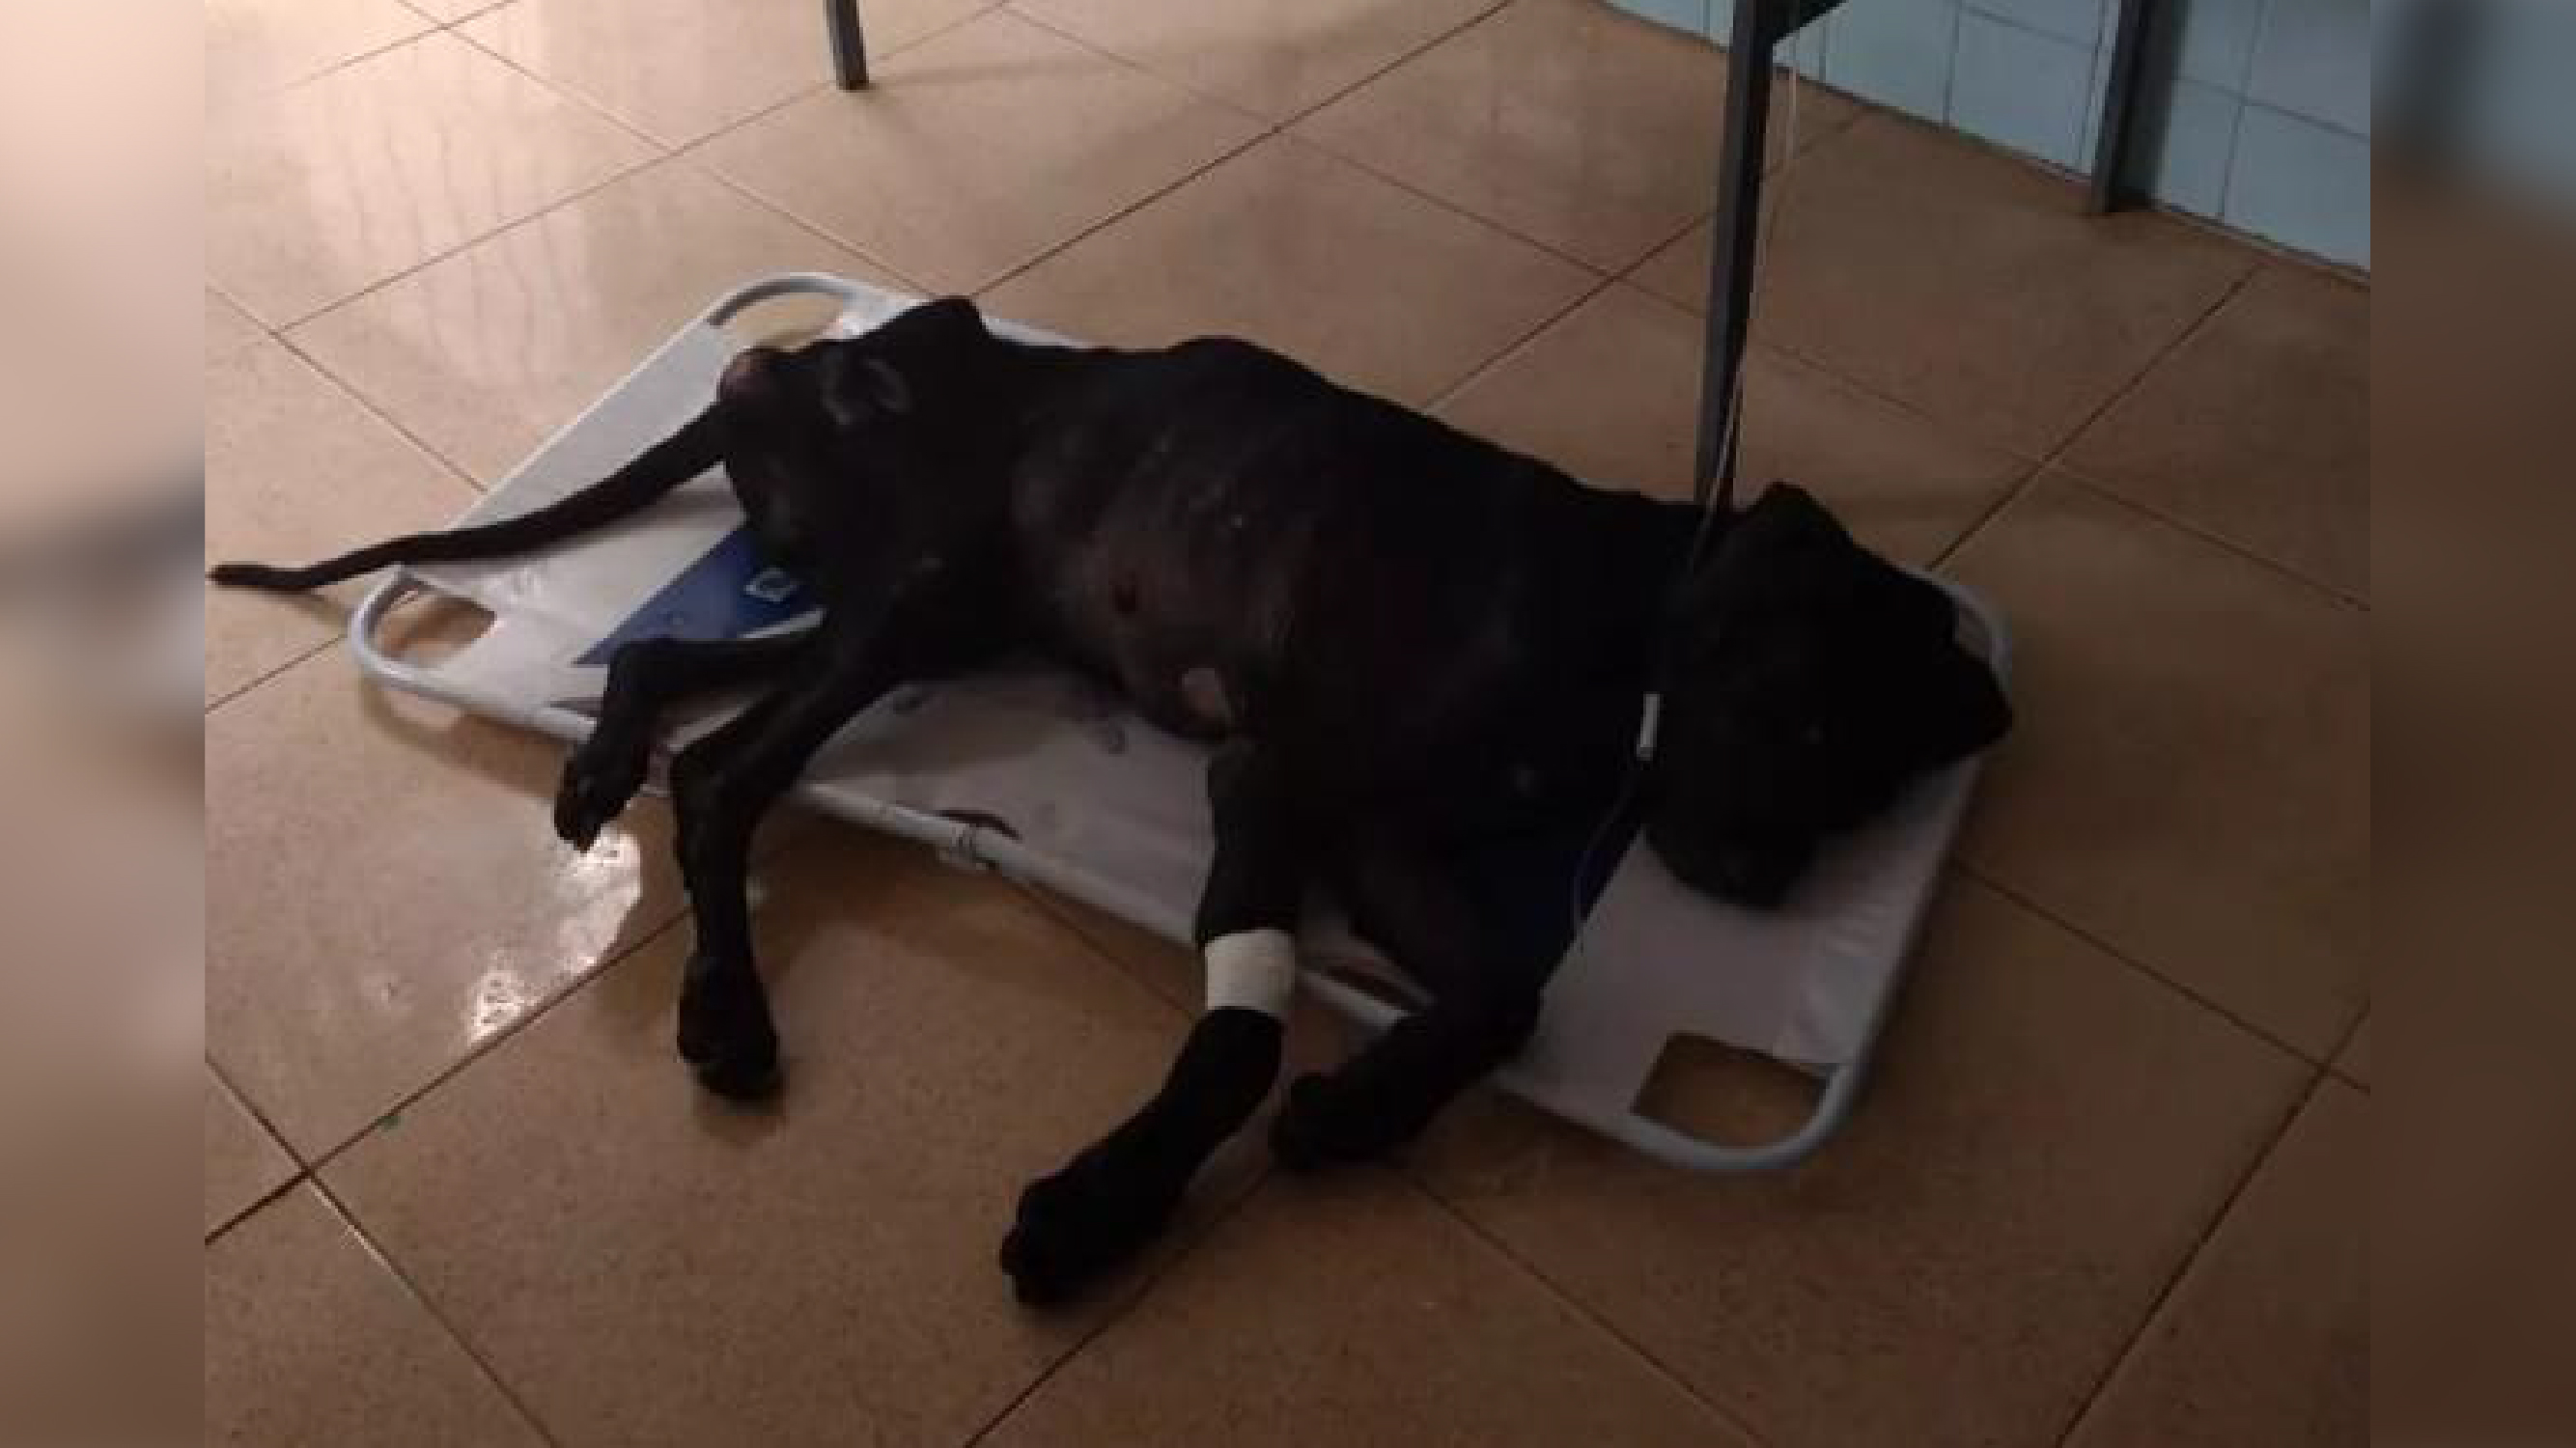 Bombeiros salvam cão vítima de maus-tratos após acusação digital/ Imagem: Reprodução Internet